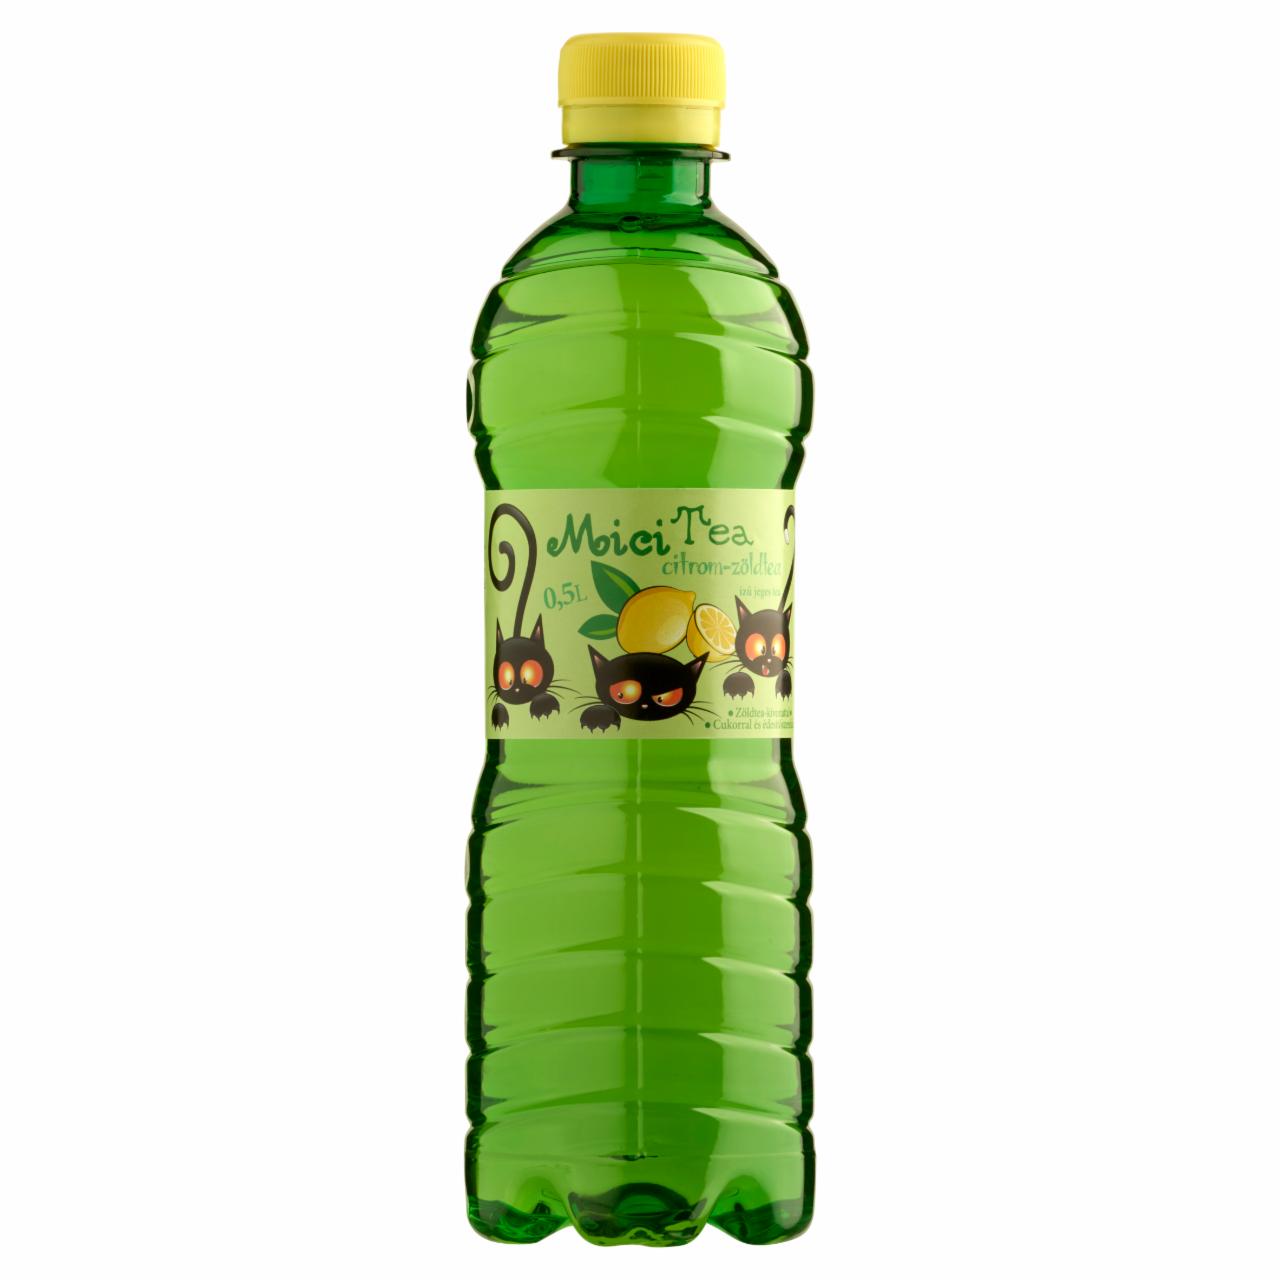 Képek - Mici Tea citrom-zöldtea ízű jeges tea cukorral és édesítőszerekkel 0,5 l